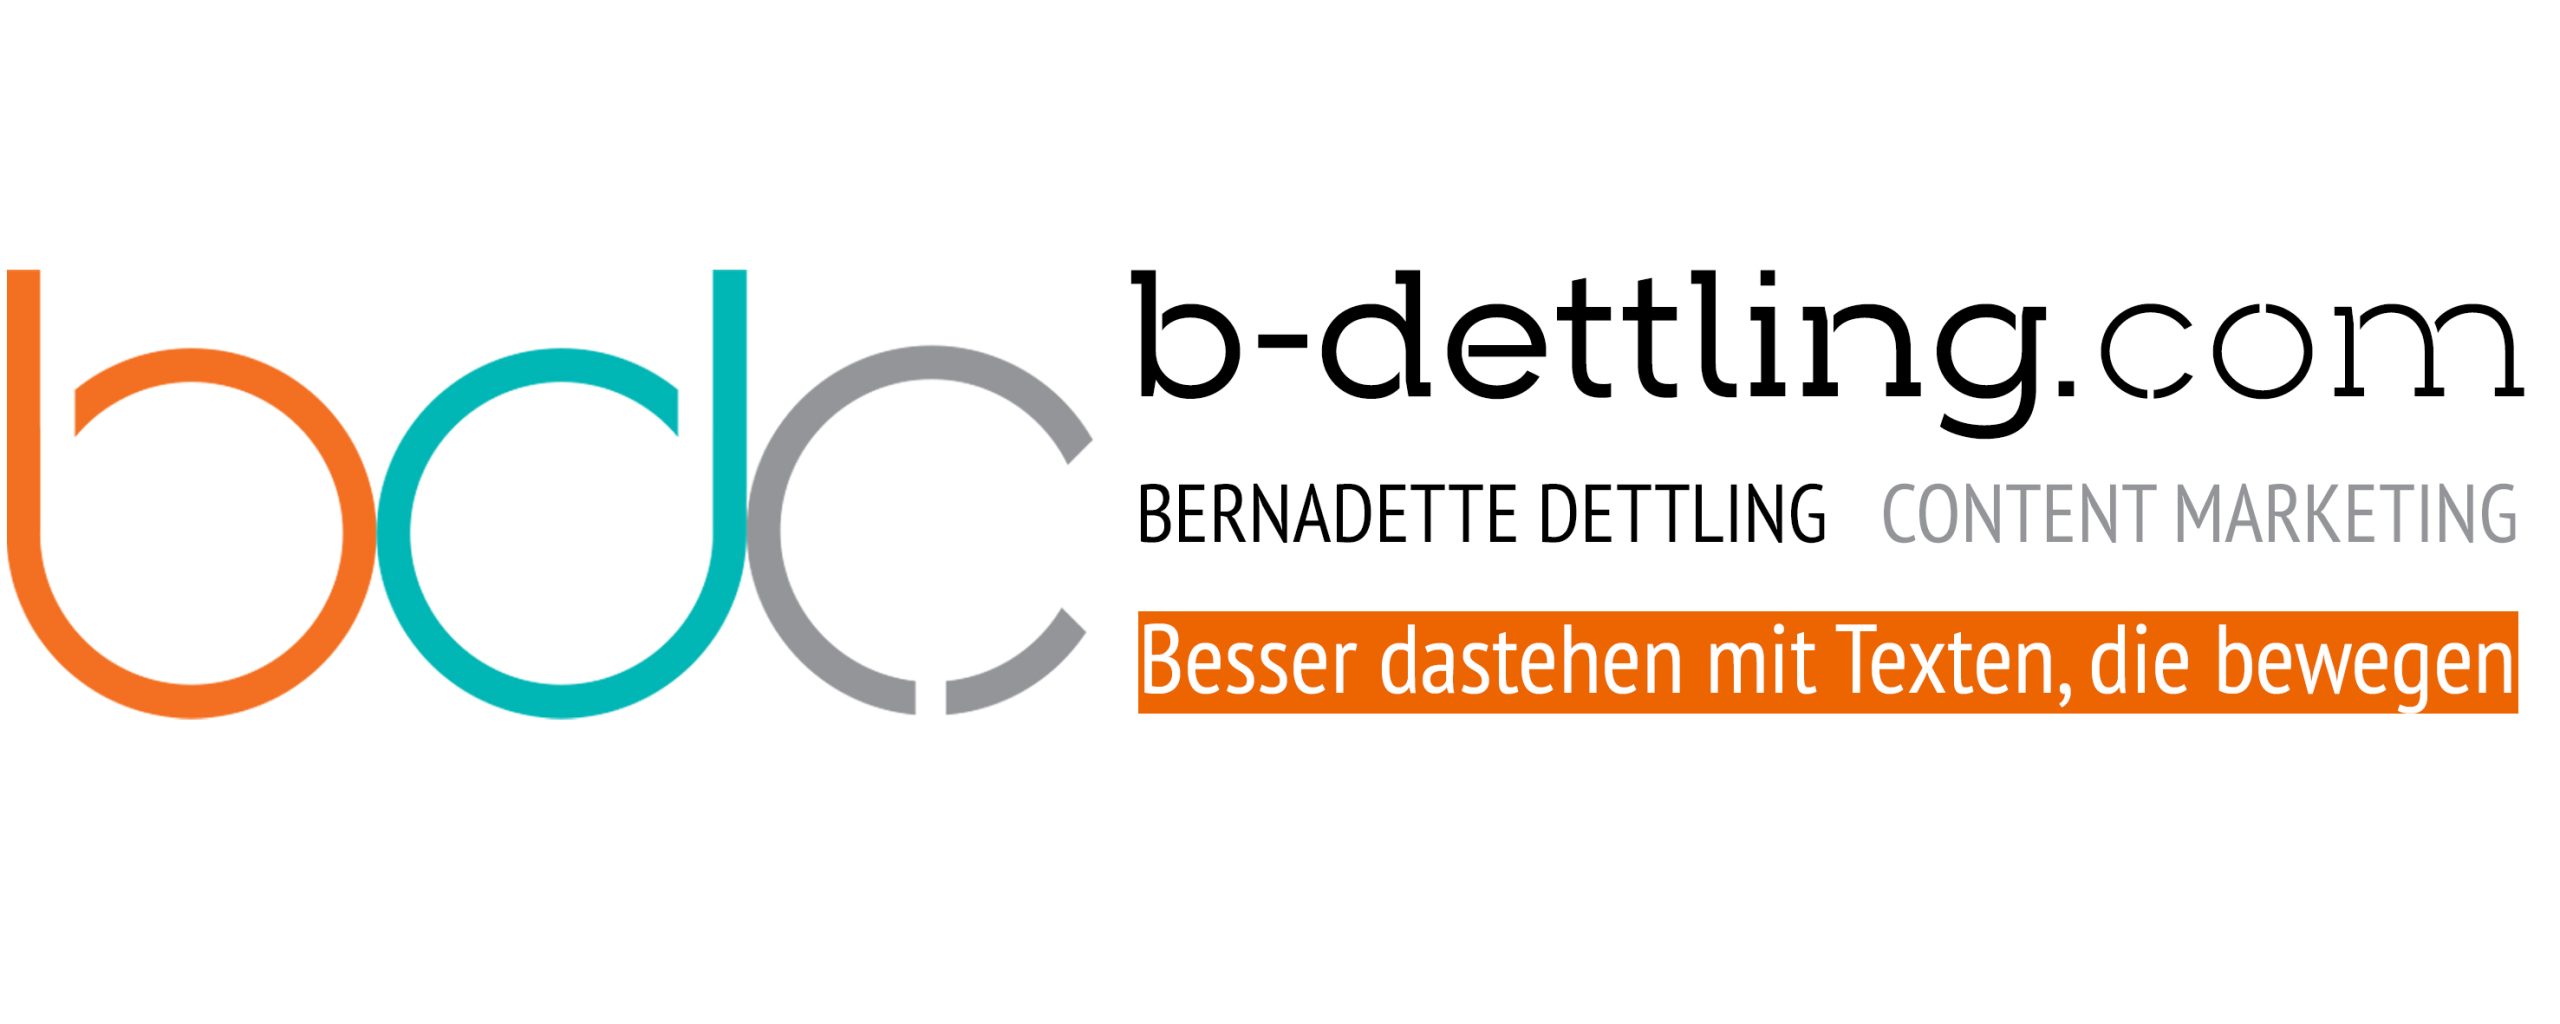 b-dettling.com